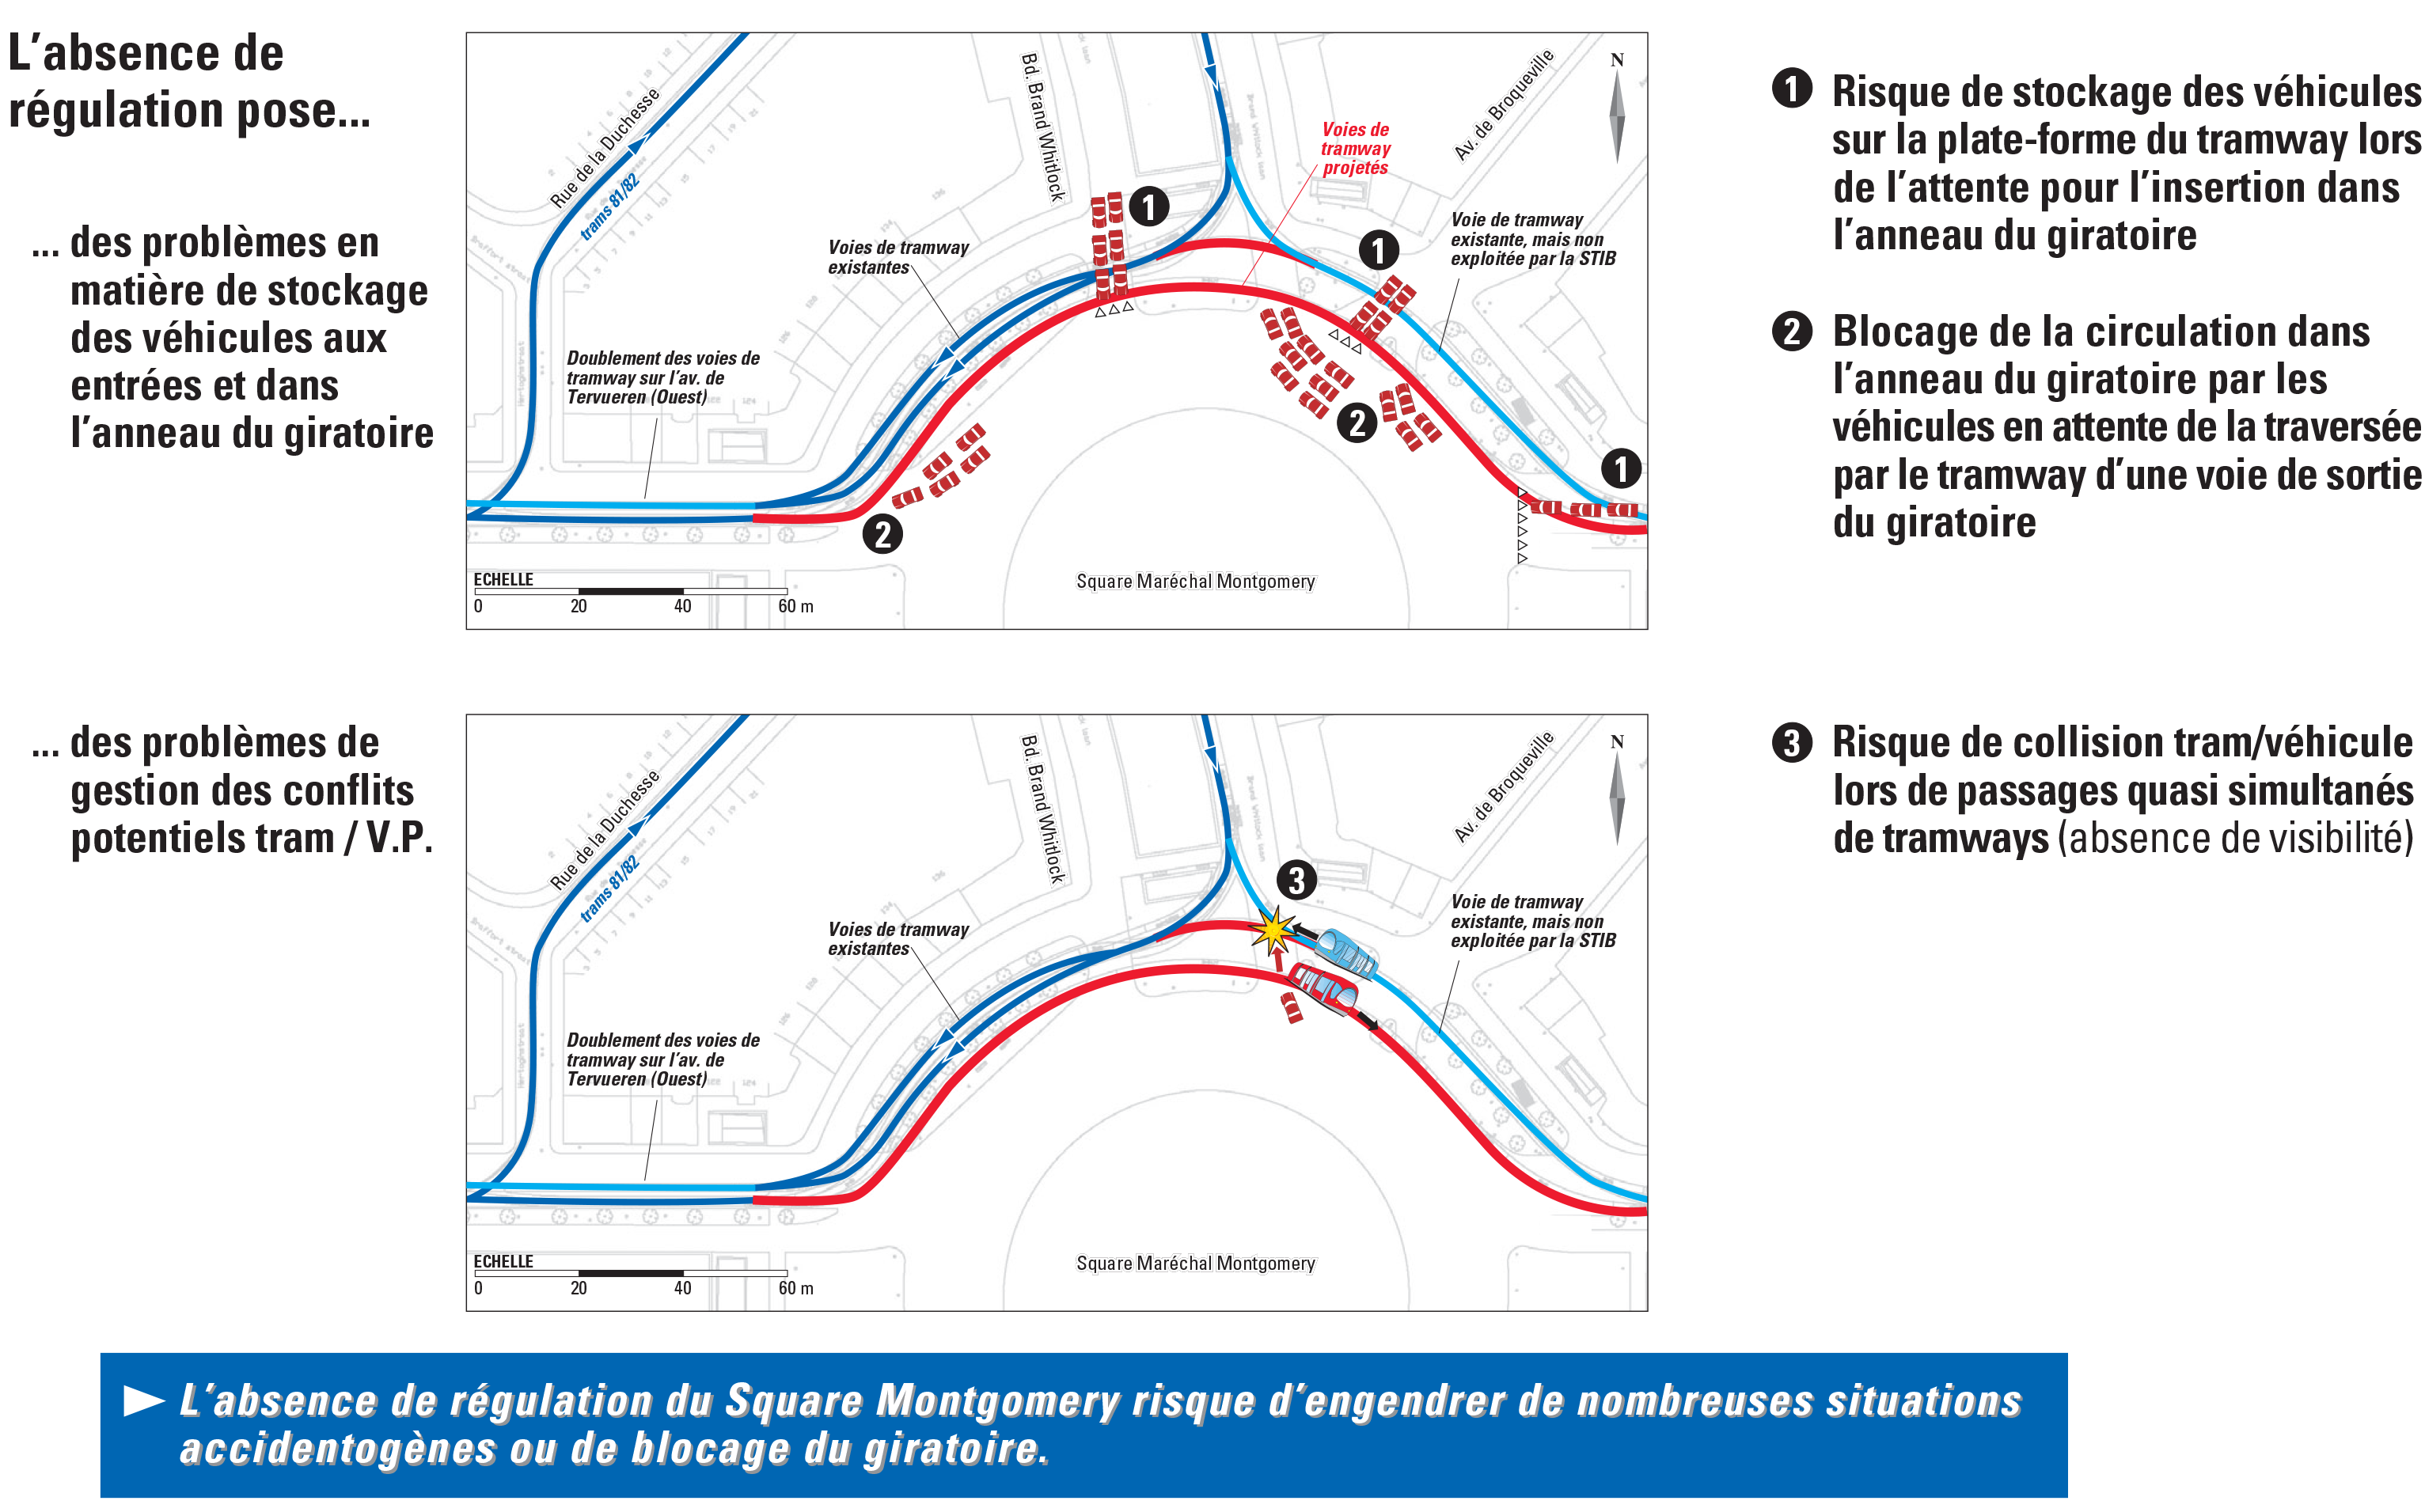 Square Montgomery – Projet de prolongement des lignes de tramways n°39 et 44 – Etude d’impact sur les trafics automobiles et tramways